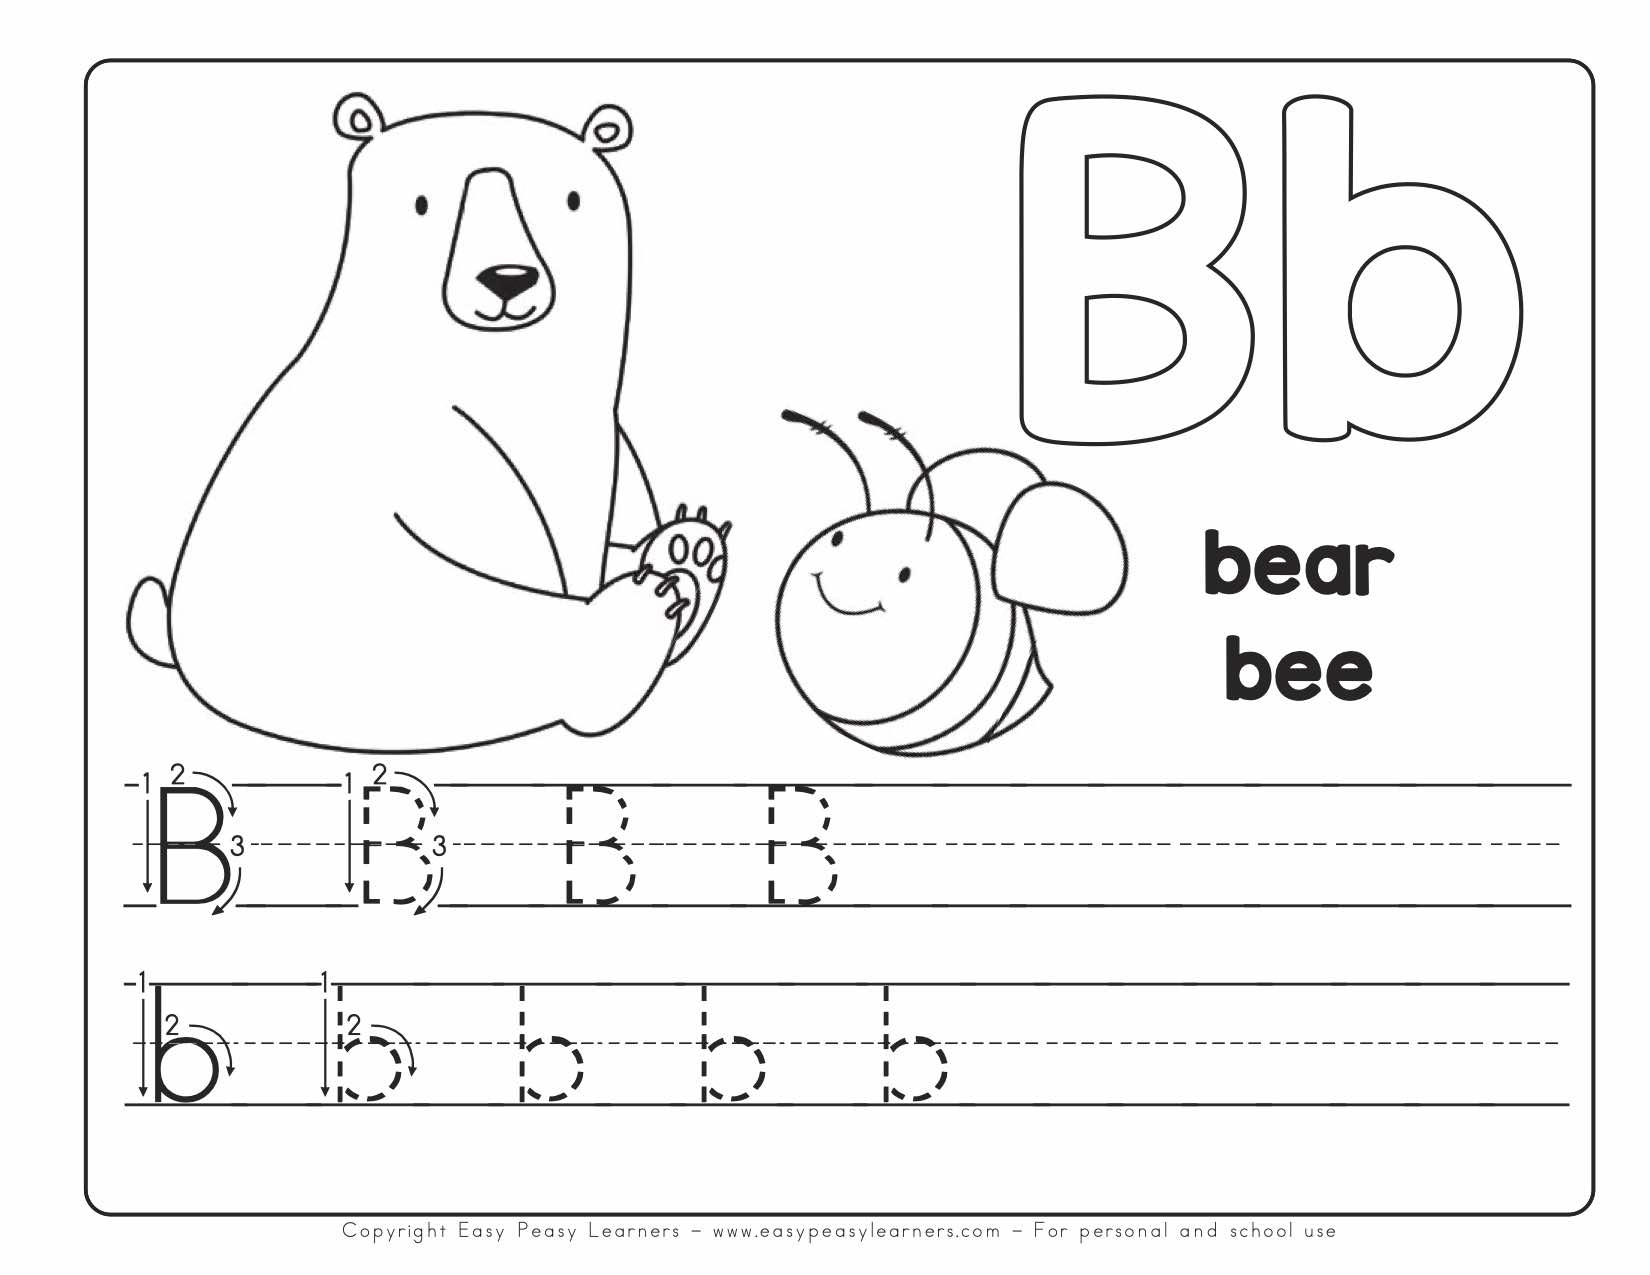 Free Printable Alphabet Book - Alphabet Worksheets For Pre-K And K for Free Printable Abc Worksheets